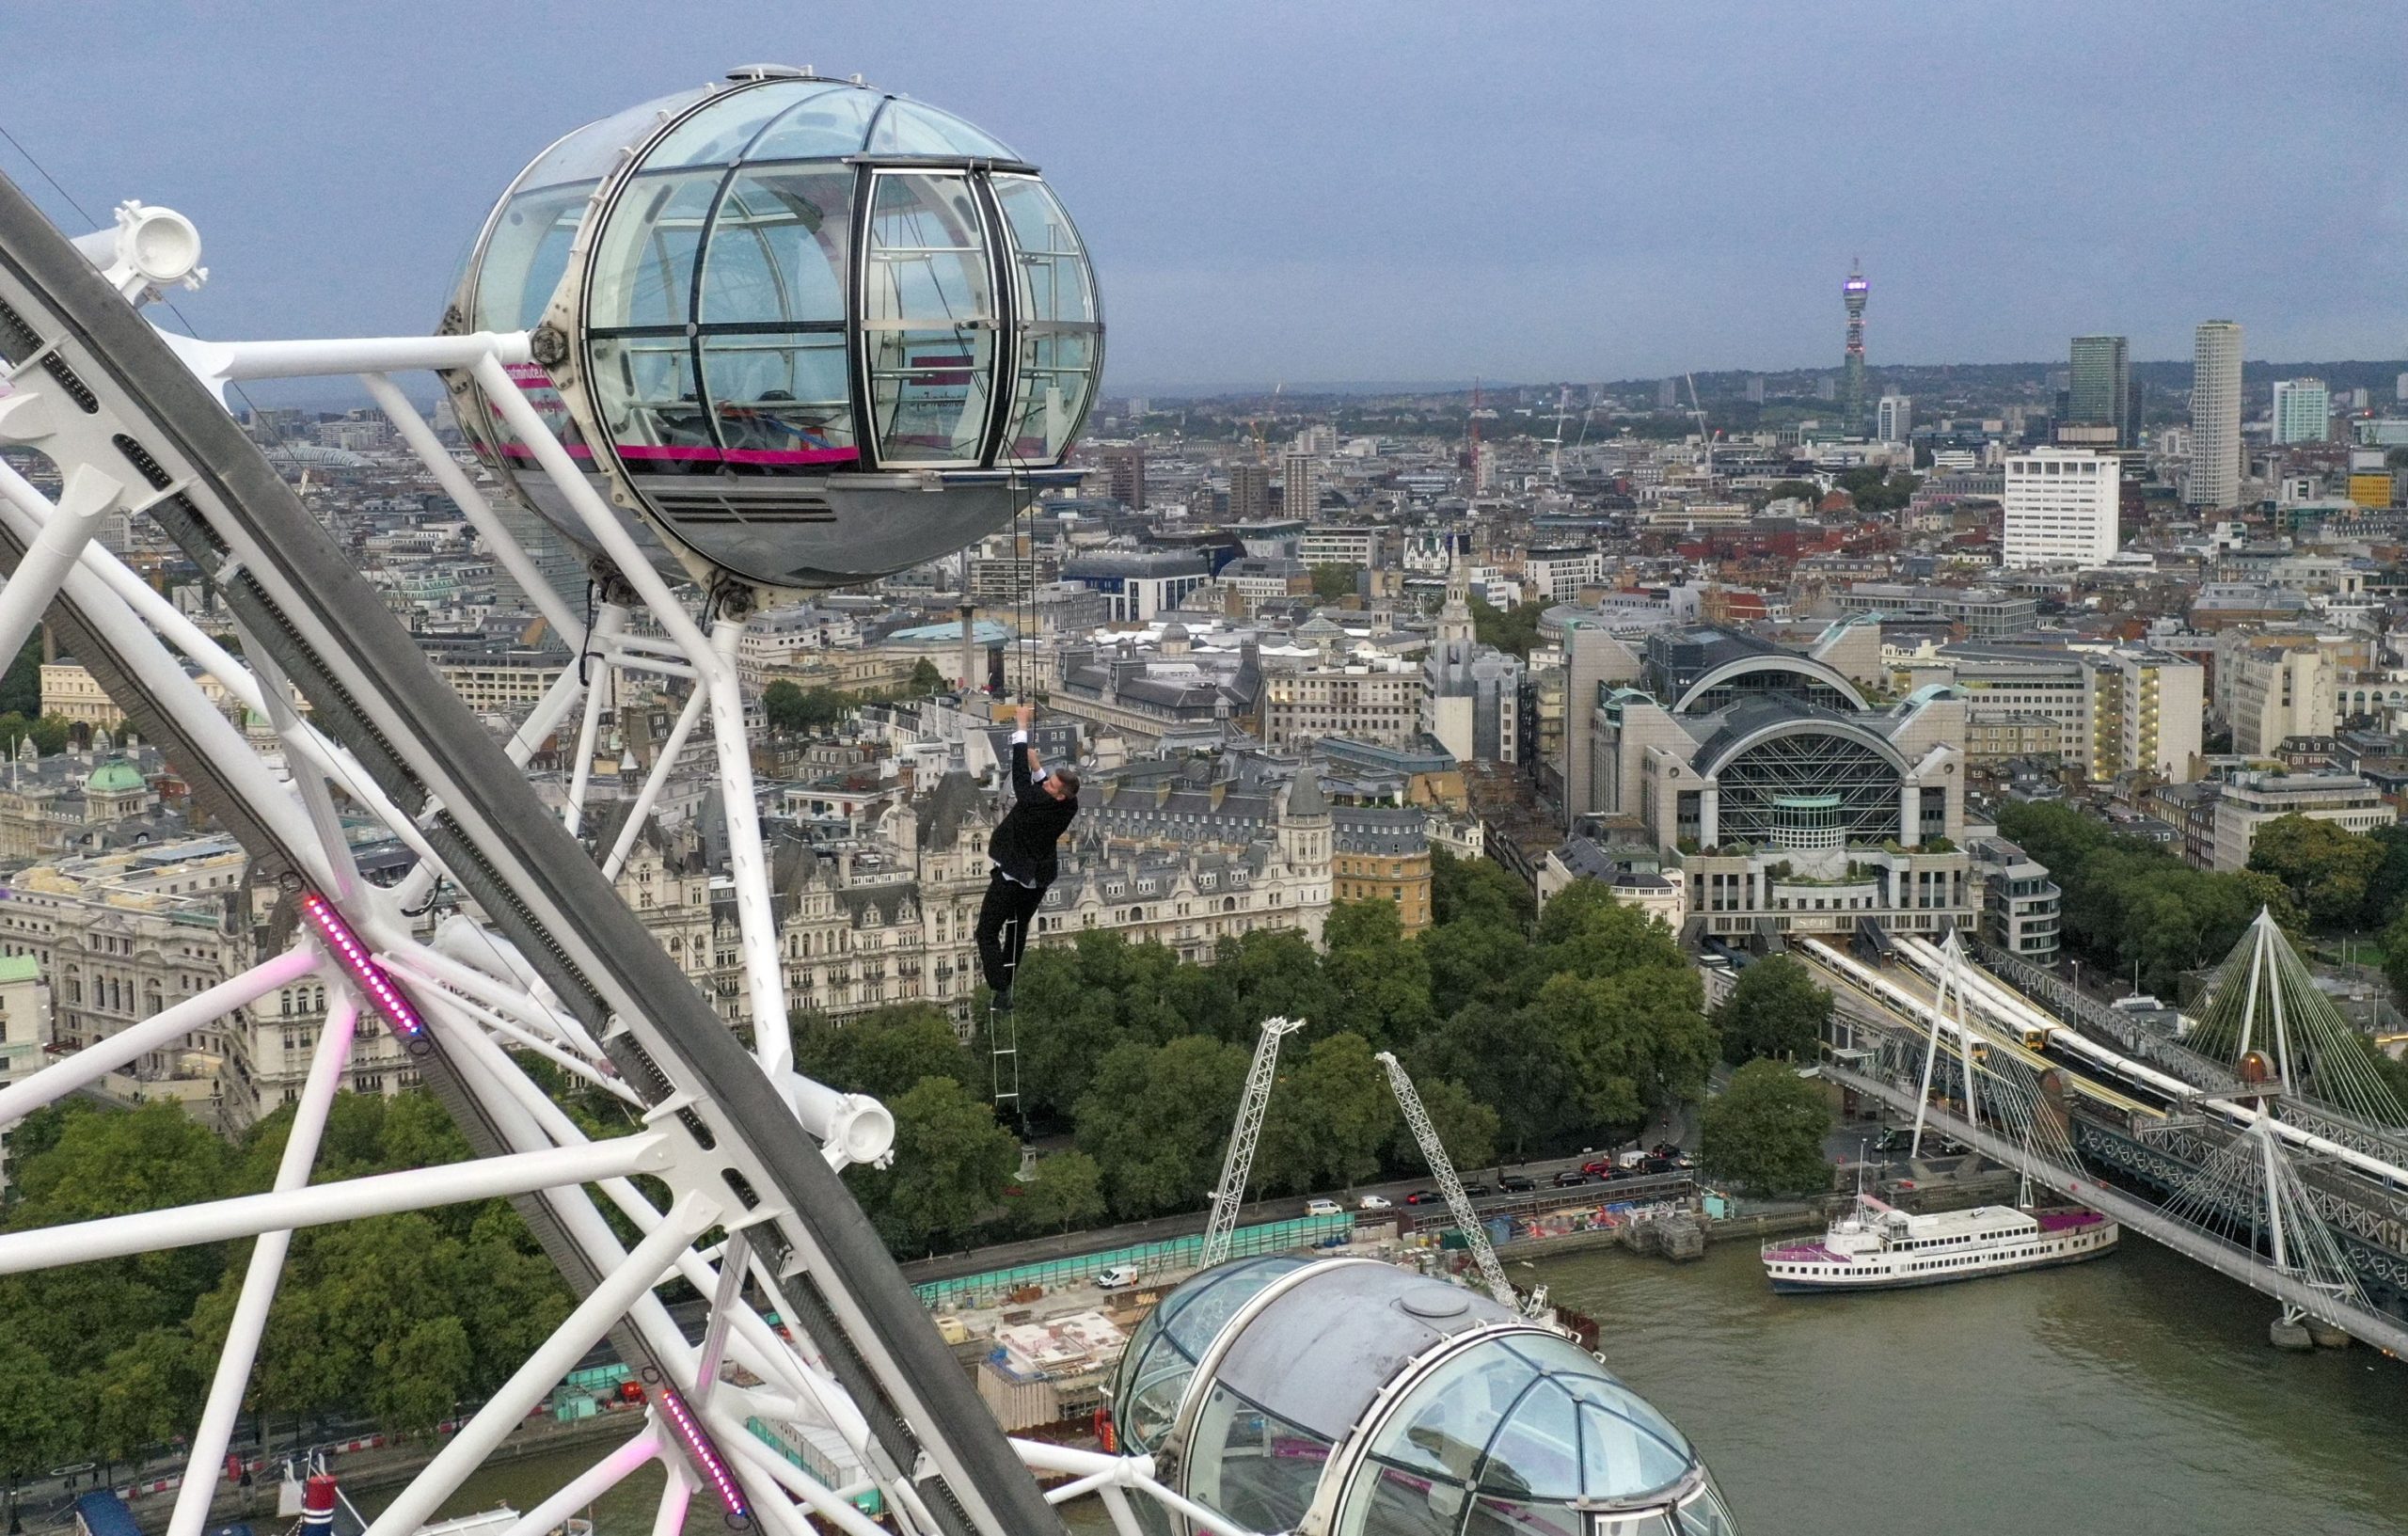 Bond lookalike performs daring stunt on London Eye ahead of film premiere